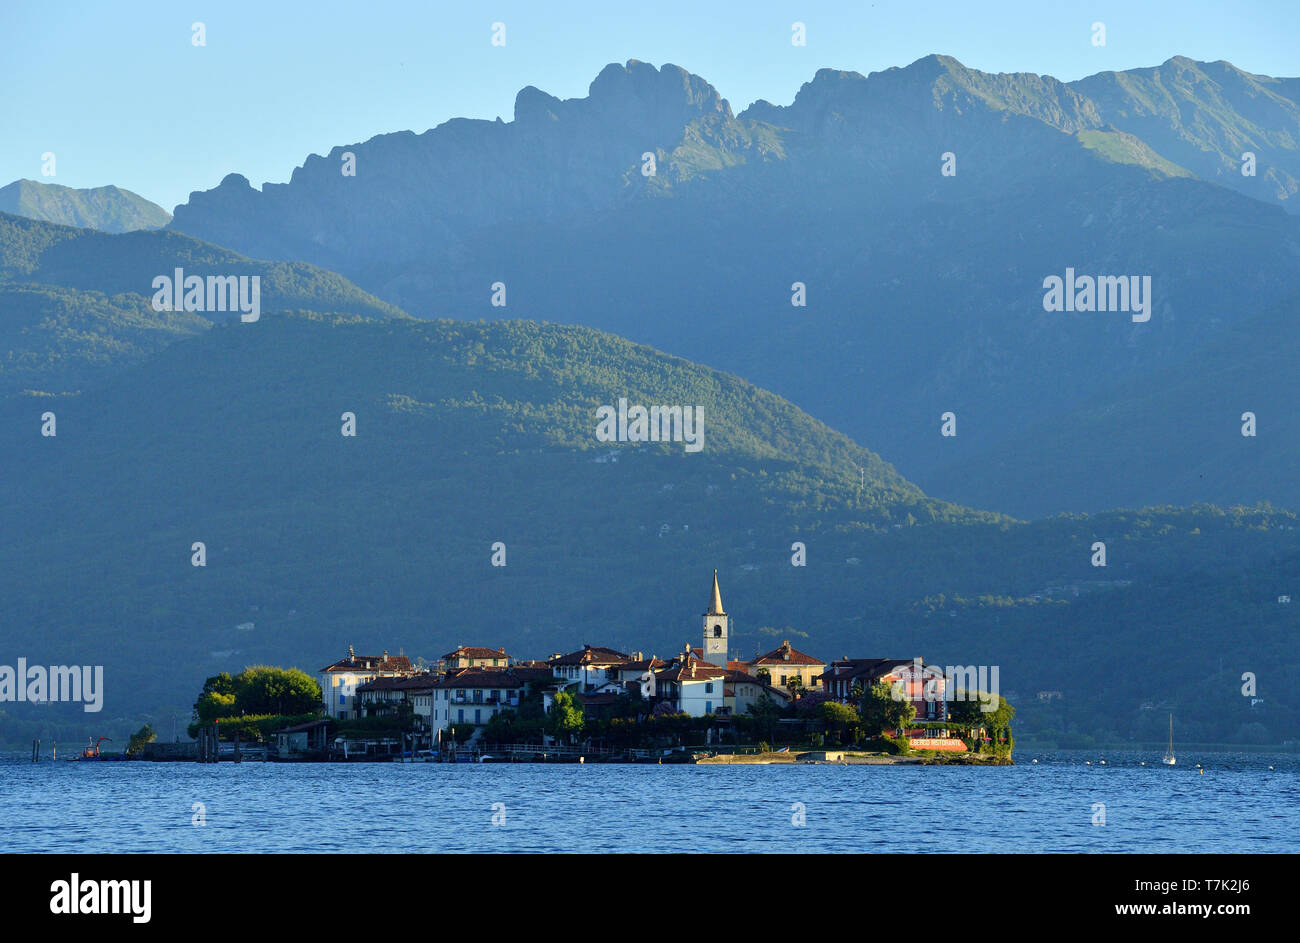 Italy, Piedmont, Stresa, Lake Maggiore (Il Lago Maggiore), Borromean Islands, Isola dei Pescatori or Isola Superiore Stock Photo